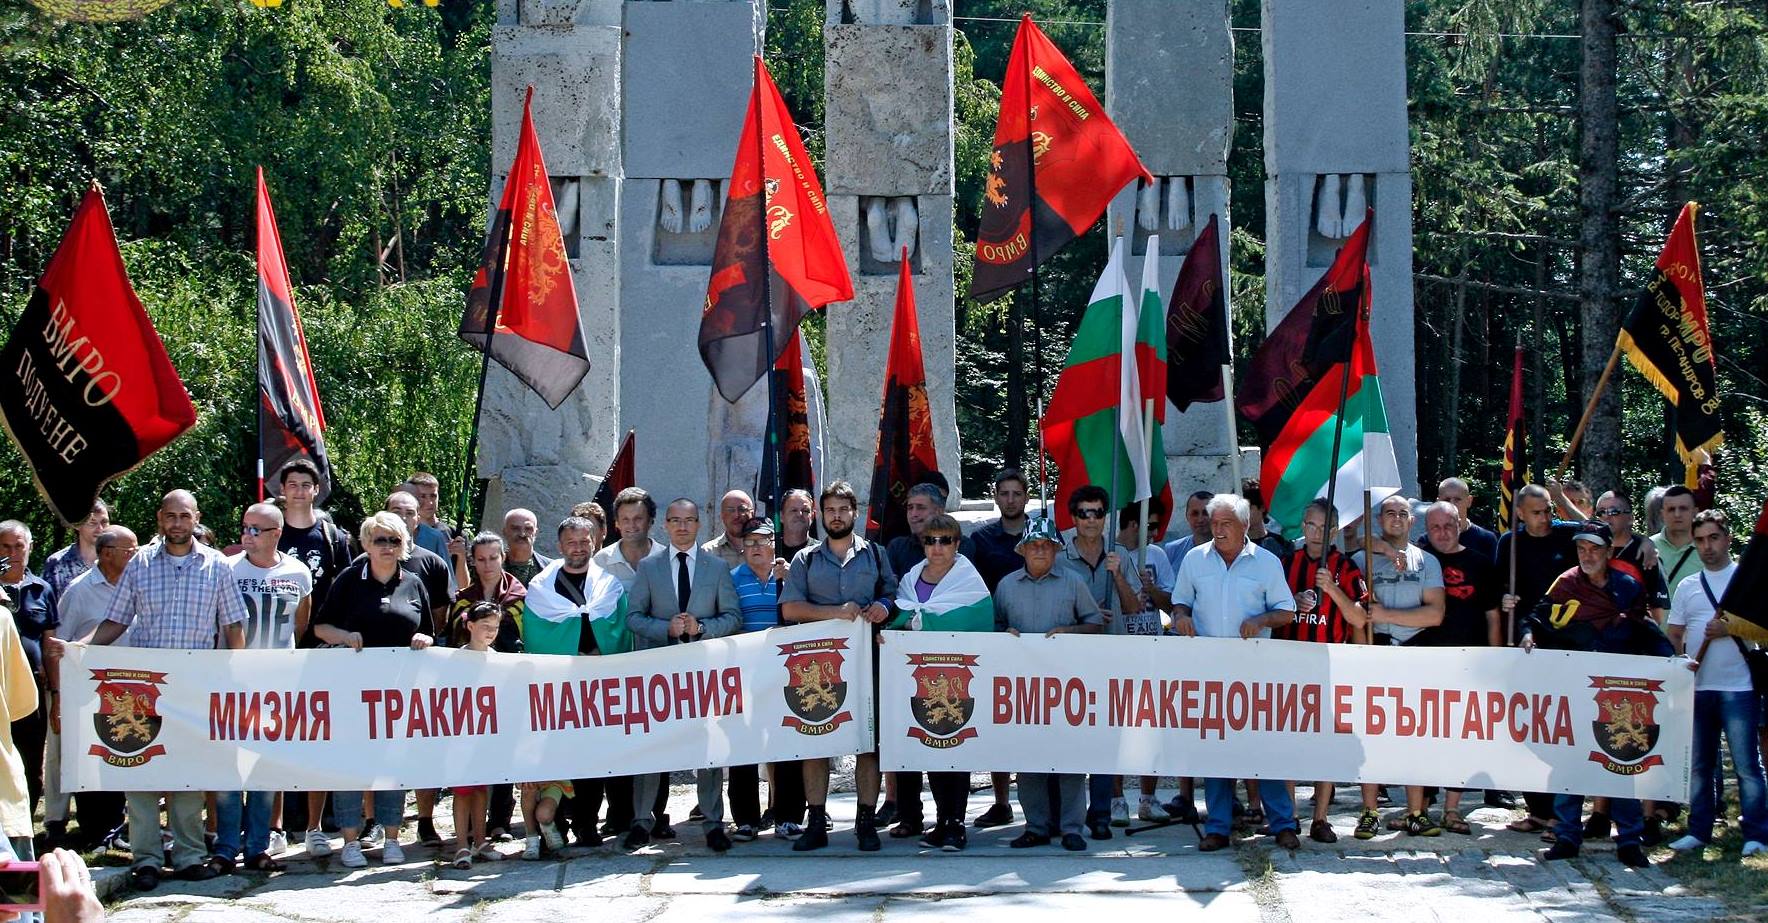 ВМРО припомня казаното от Вазов: ”Македония е наша!”